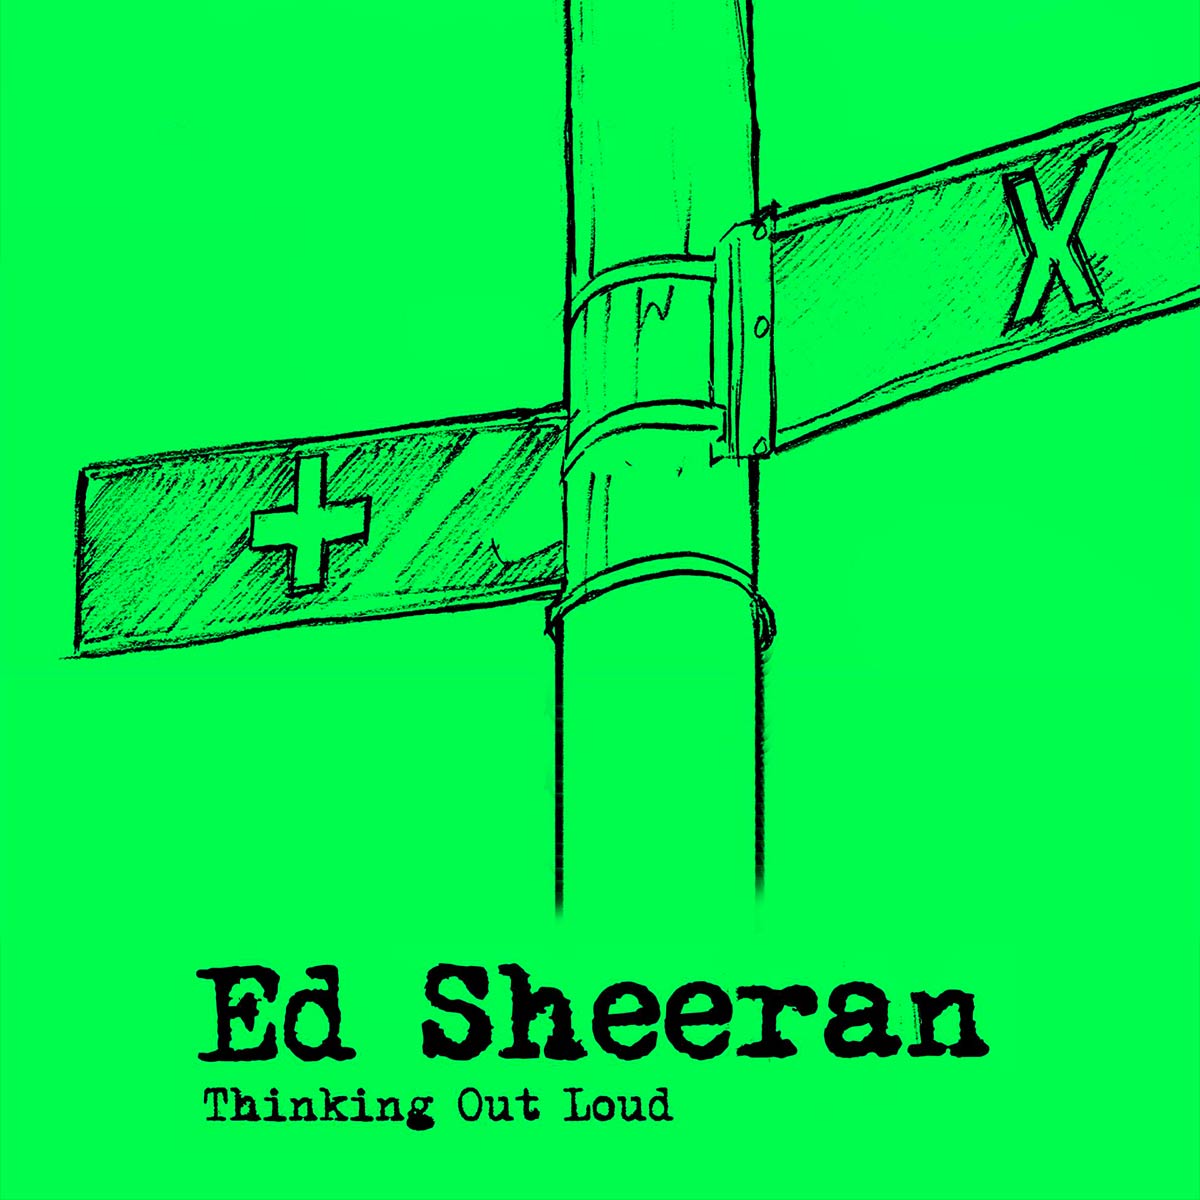 Ed Sheeran: Thinking out loud, la portada de la canción